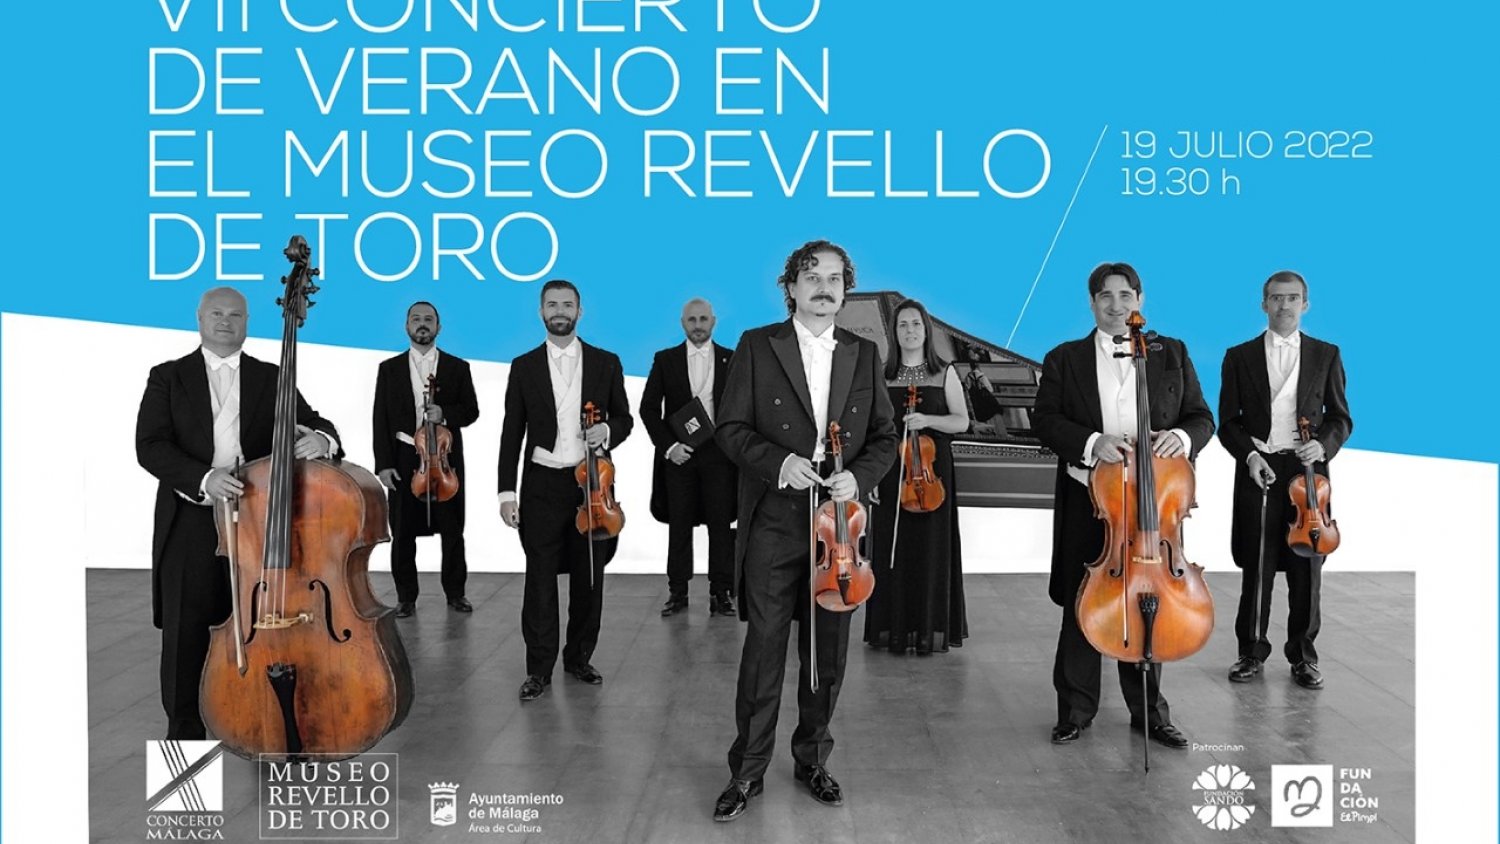 El Museo Revello de Toro organiza su VII Concierto de Verano con la actuación de Concerto Málaga